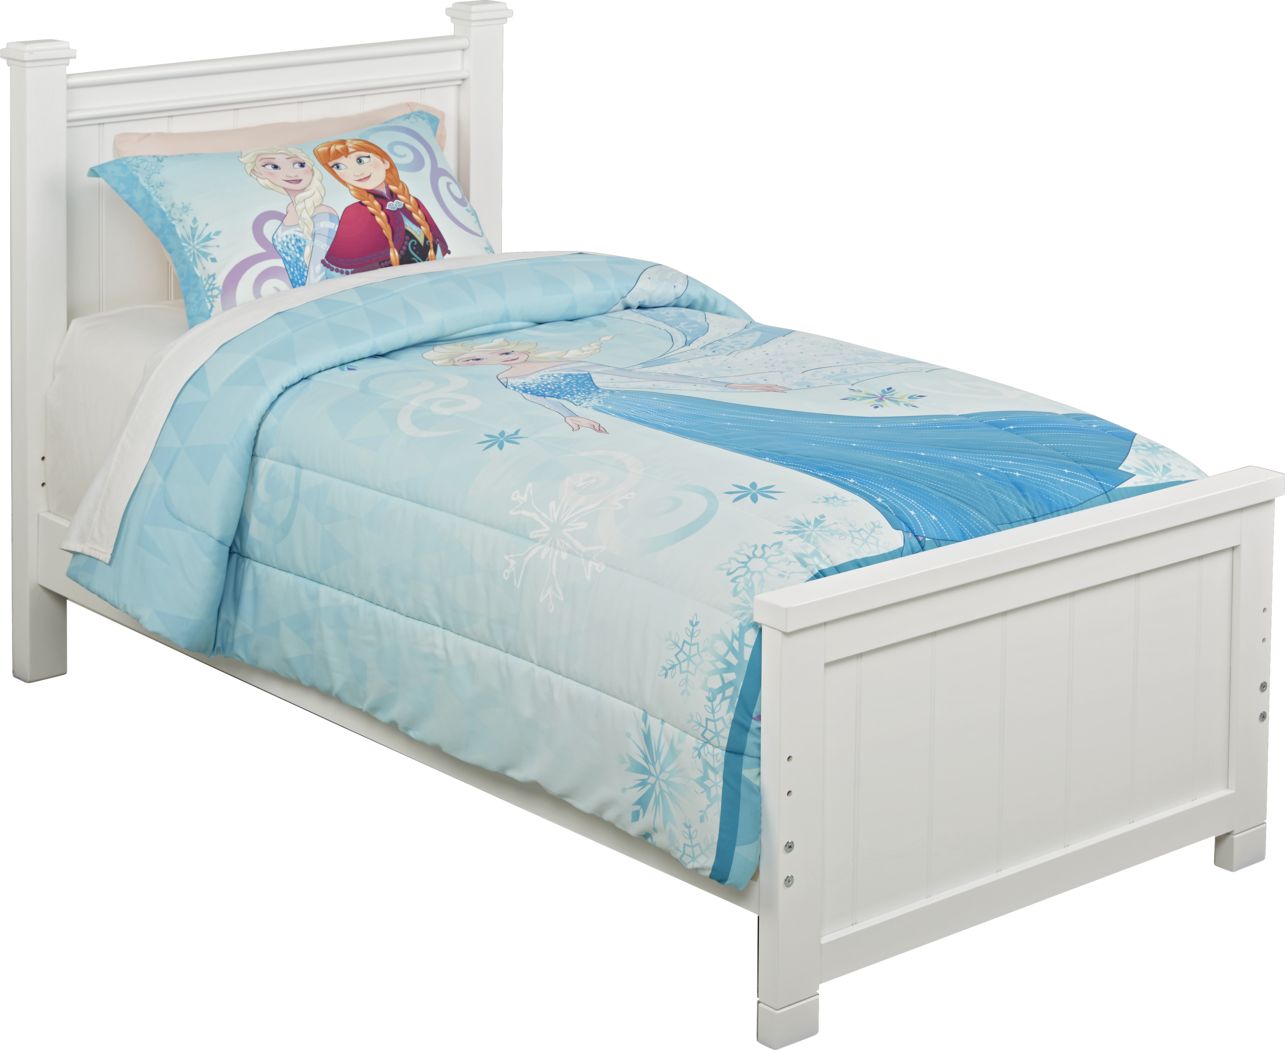 Kids Disney Frozen Bedroom Furniture Bedding Bed Sets Etc